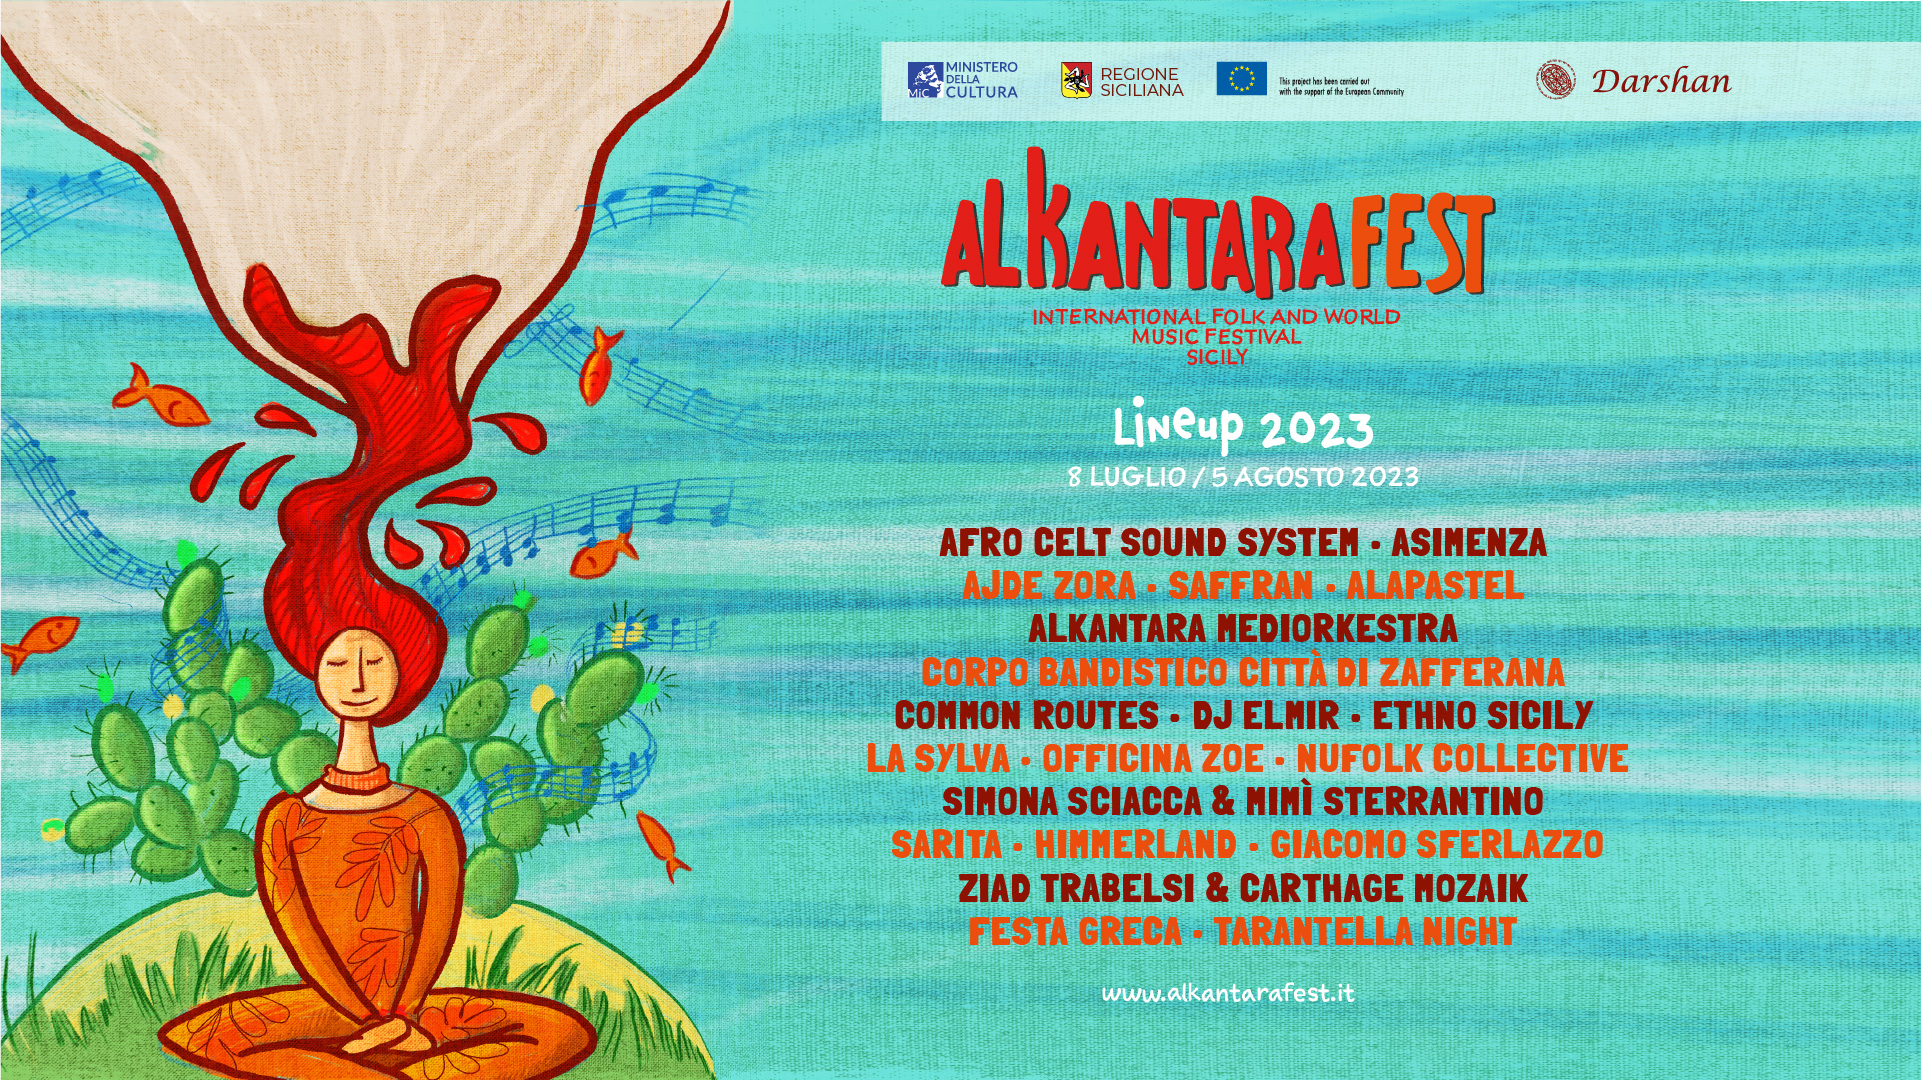 Alkantara Fest, fuori il video promo e la line up 2023